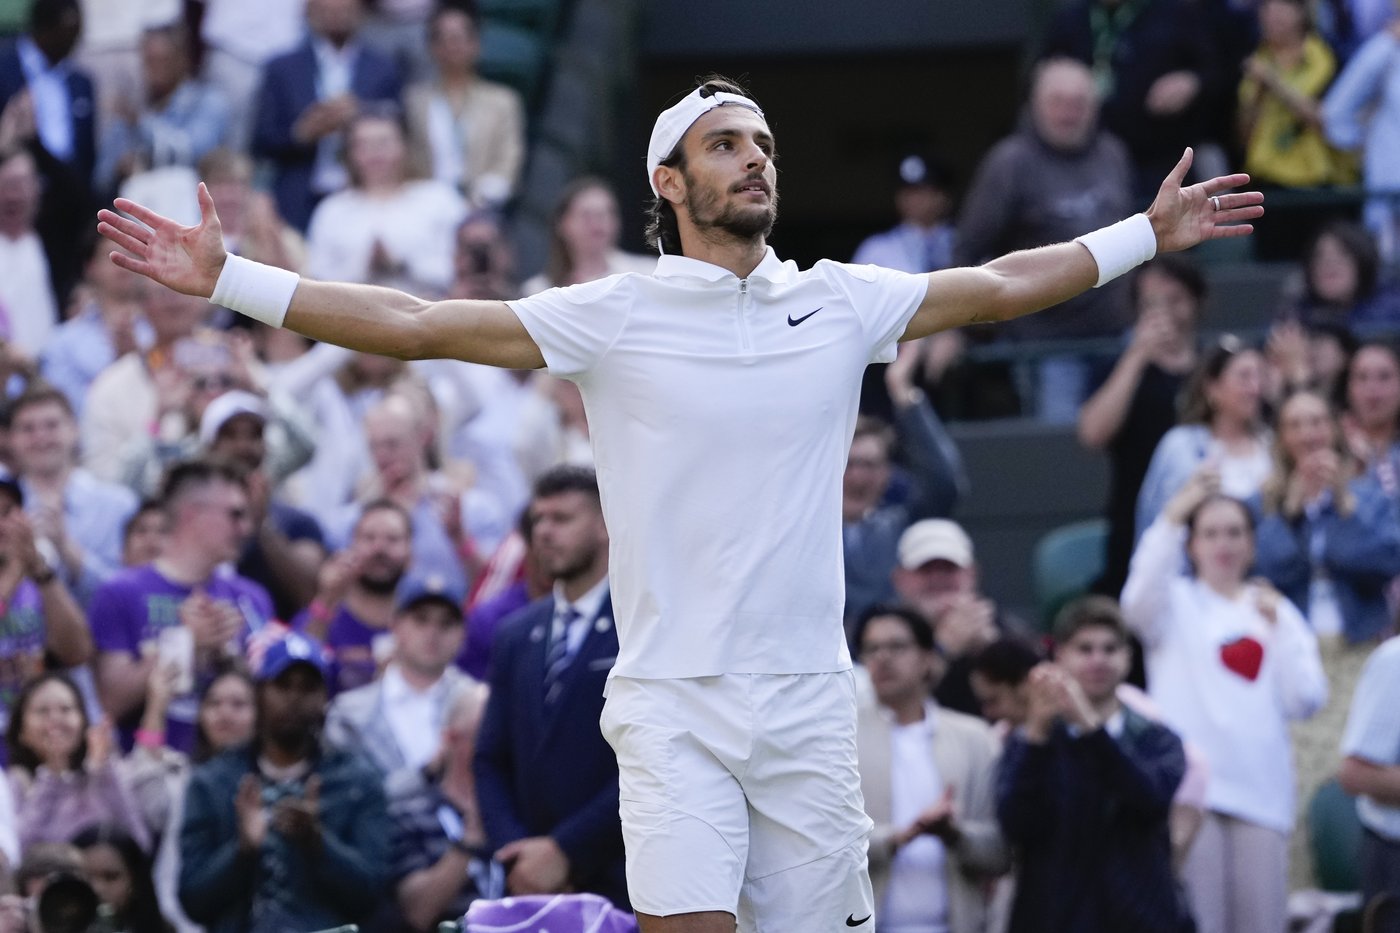 De Minaur se retire de Wimbledon; Djokovic affrontera Musetti en demi-finales